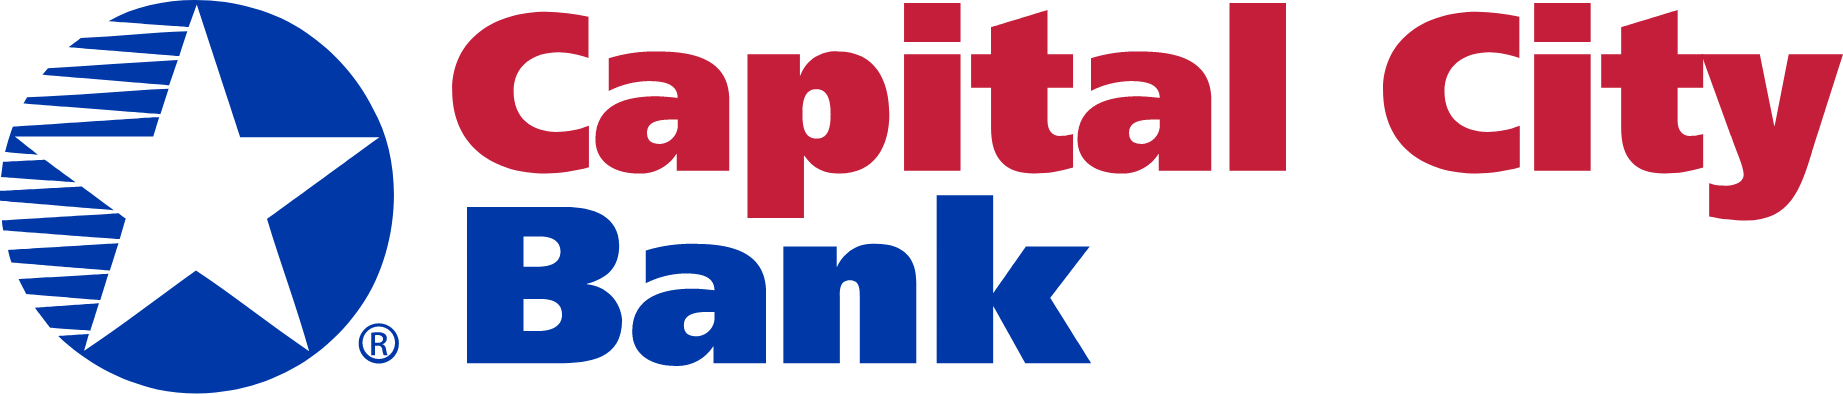 Capital City Bank Group
 logo large (transparent PNG)